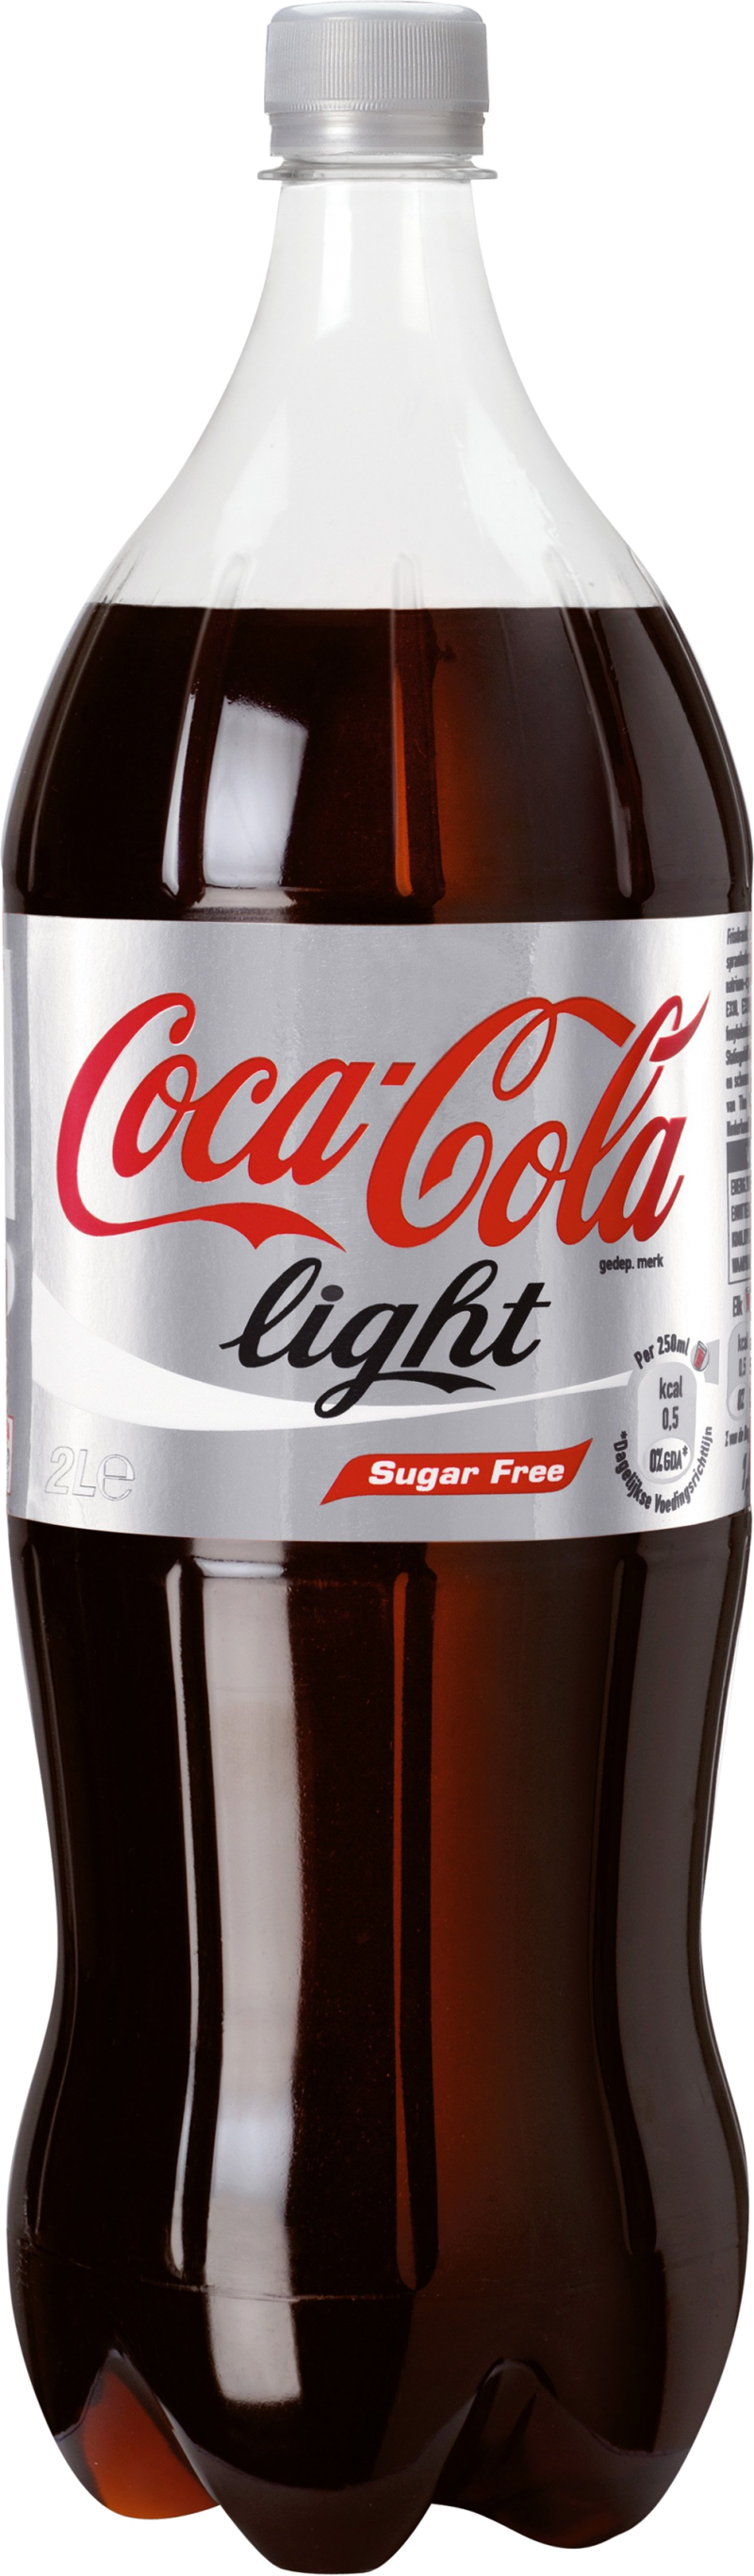 Coca Cola Bottle PNG Image P